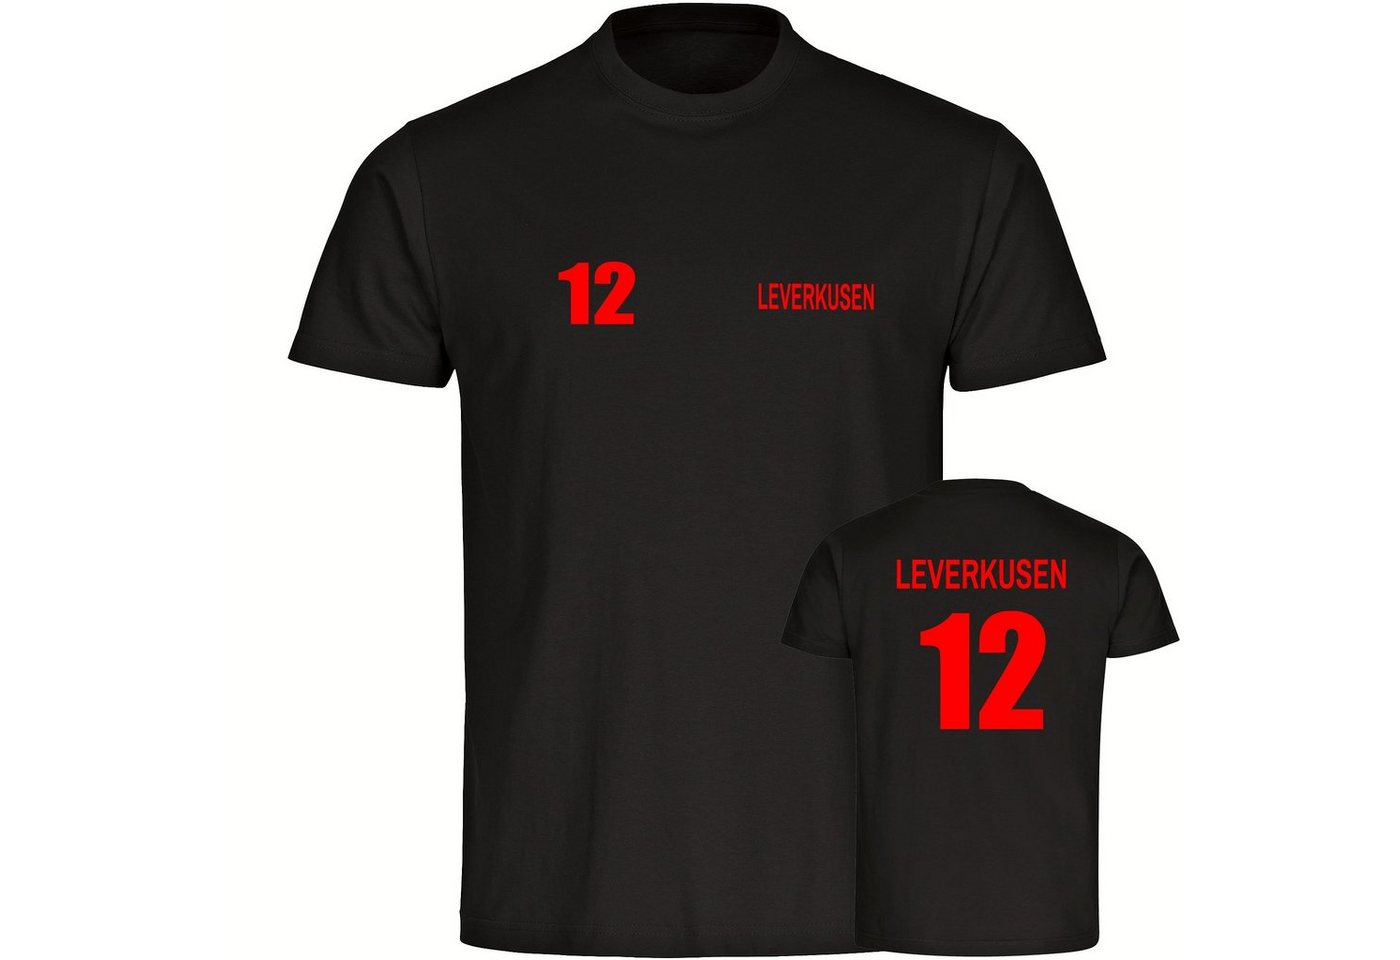 multifanshop T-Shirt Herren Leverkusen - Trikot 12 - Männer von multifanshop